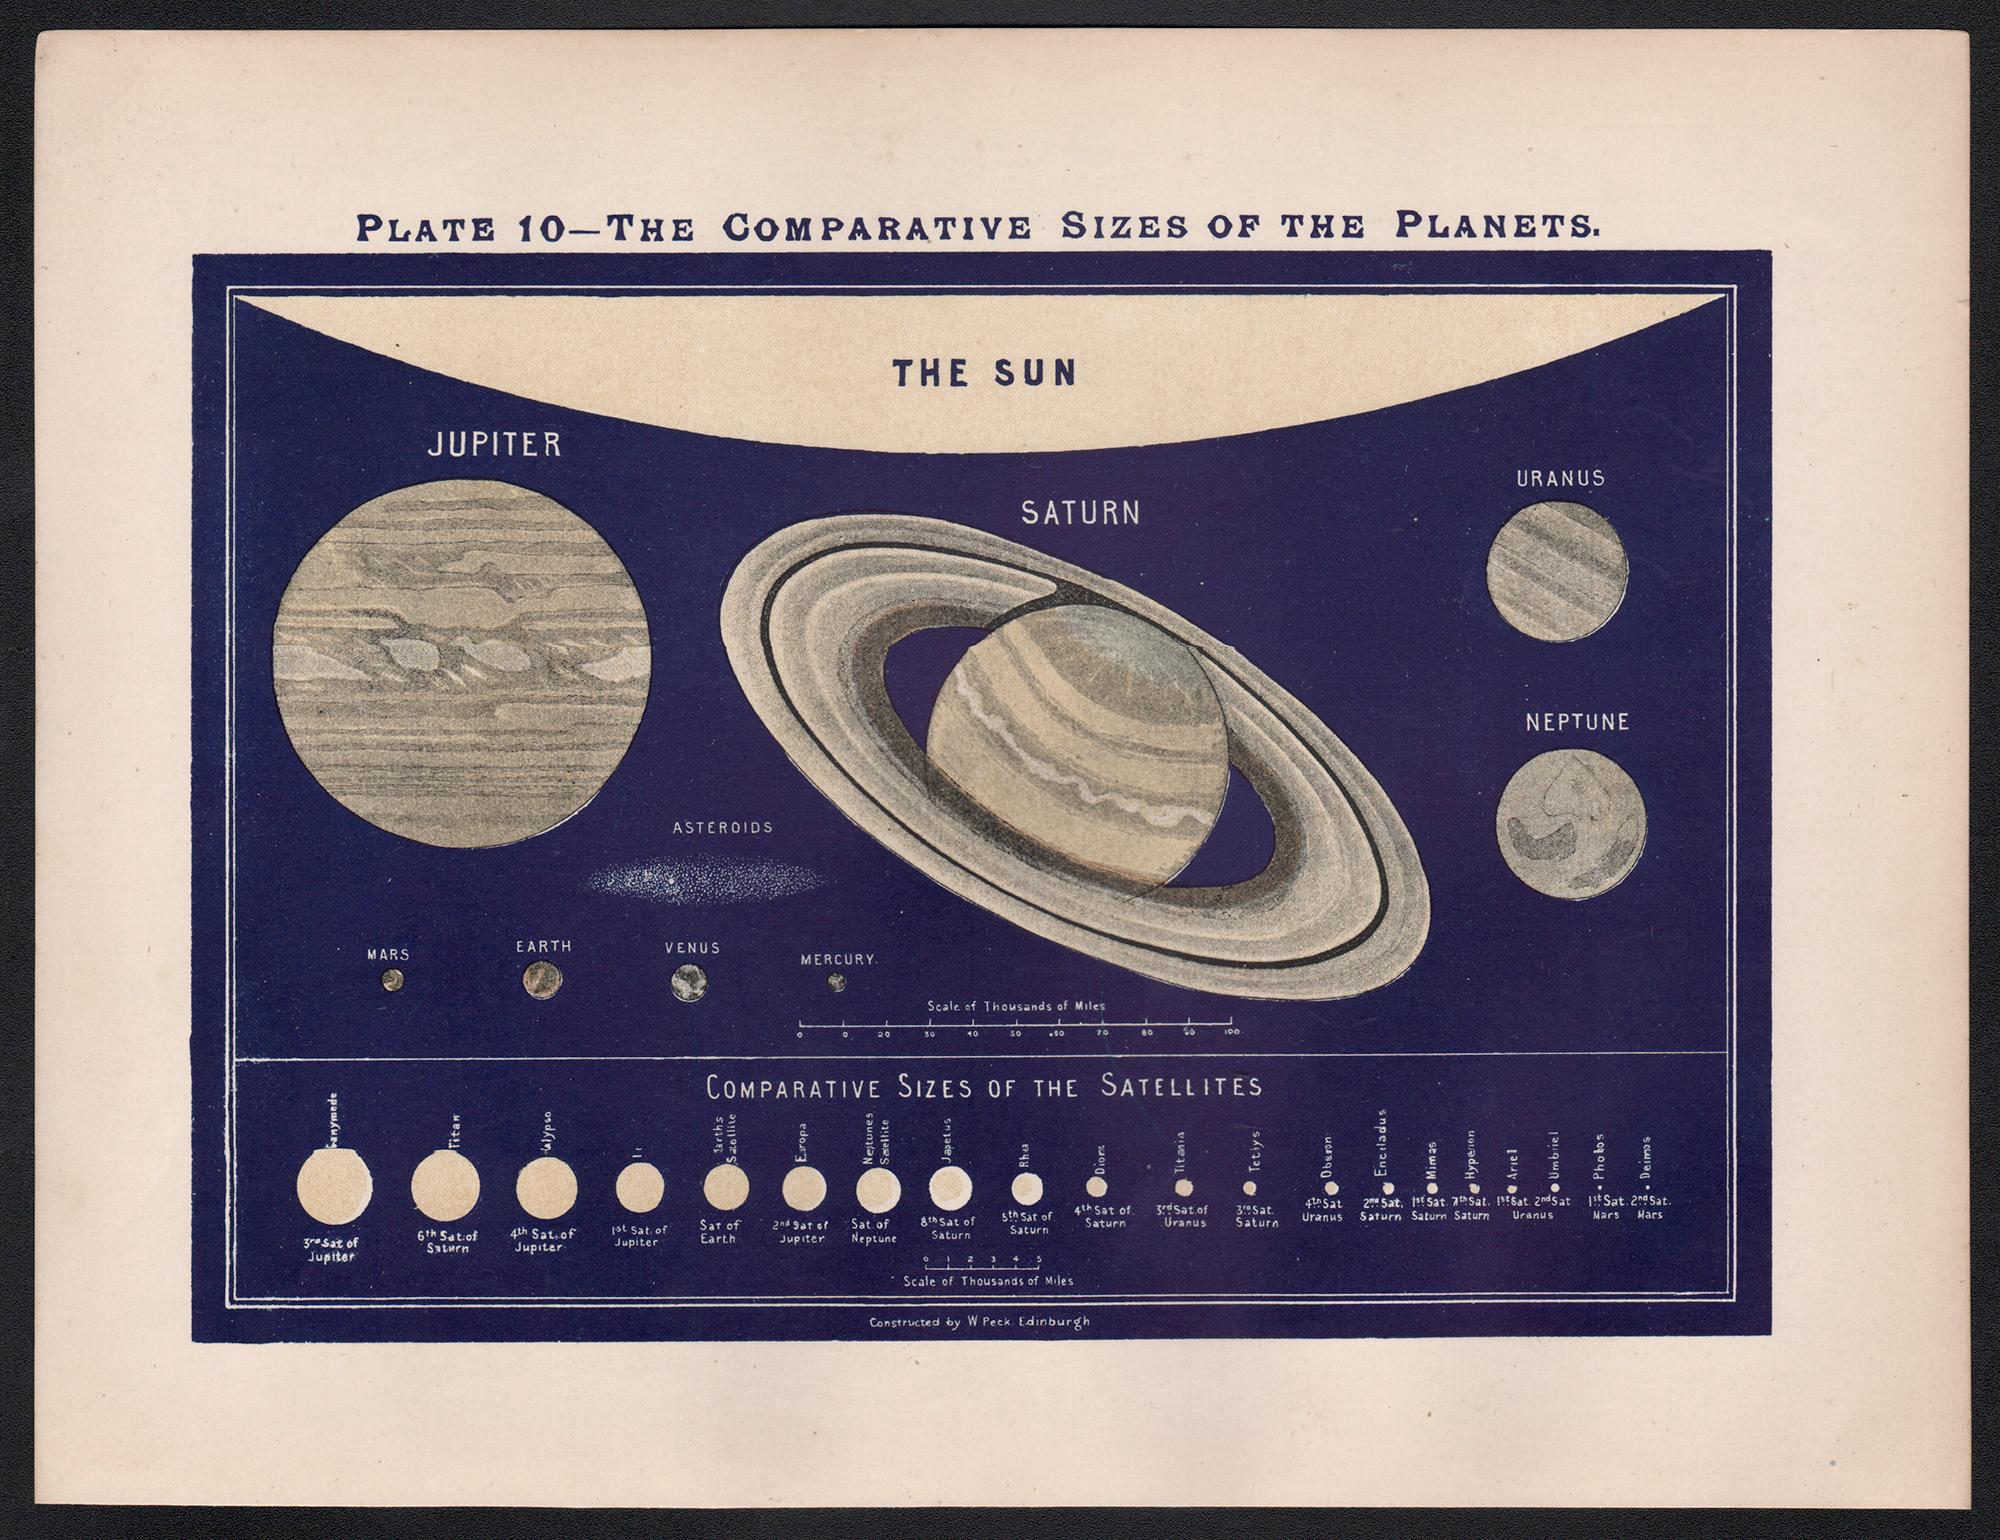 Vergleichbare Größen der Planeten. Antikes Astronomenisches Diagramm – Print von William Peck